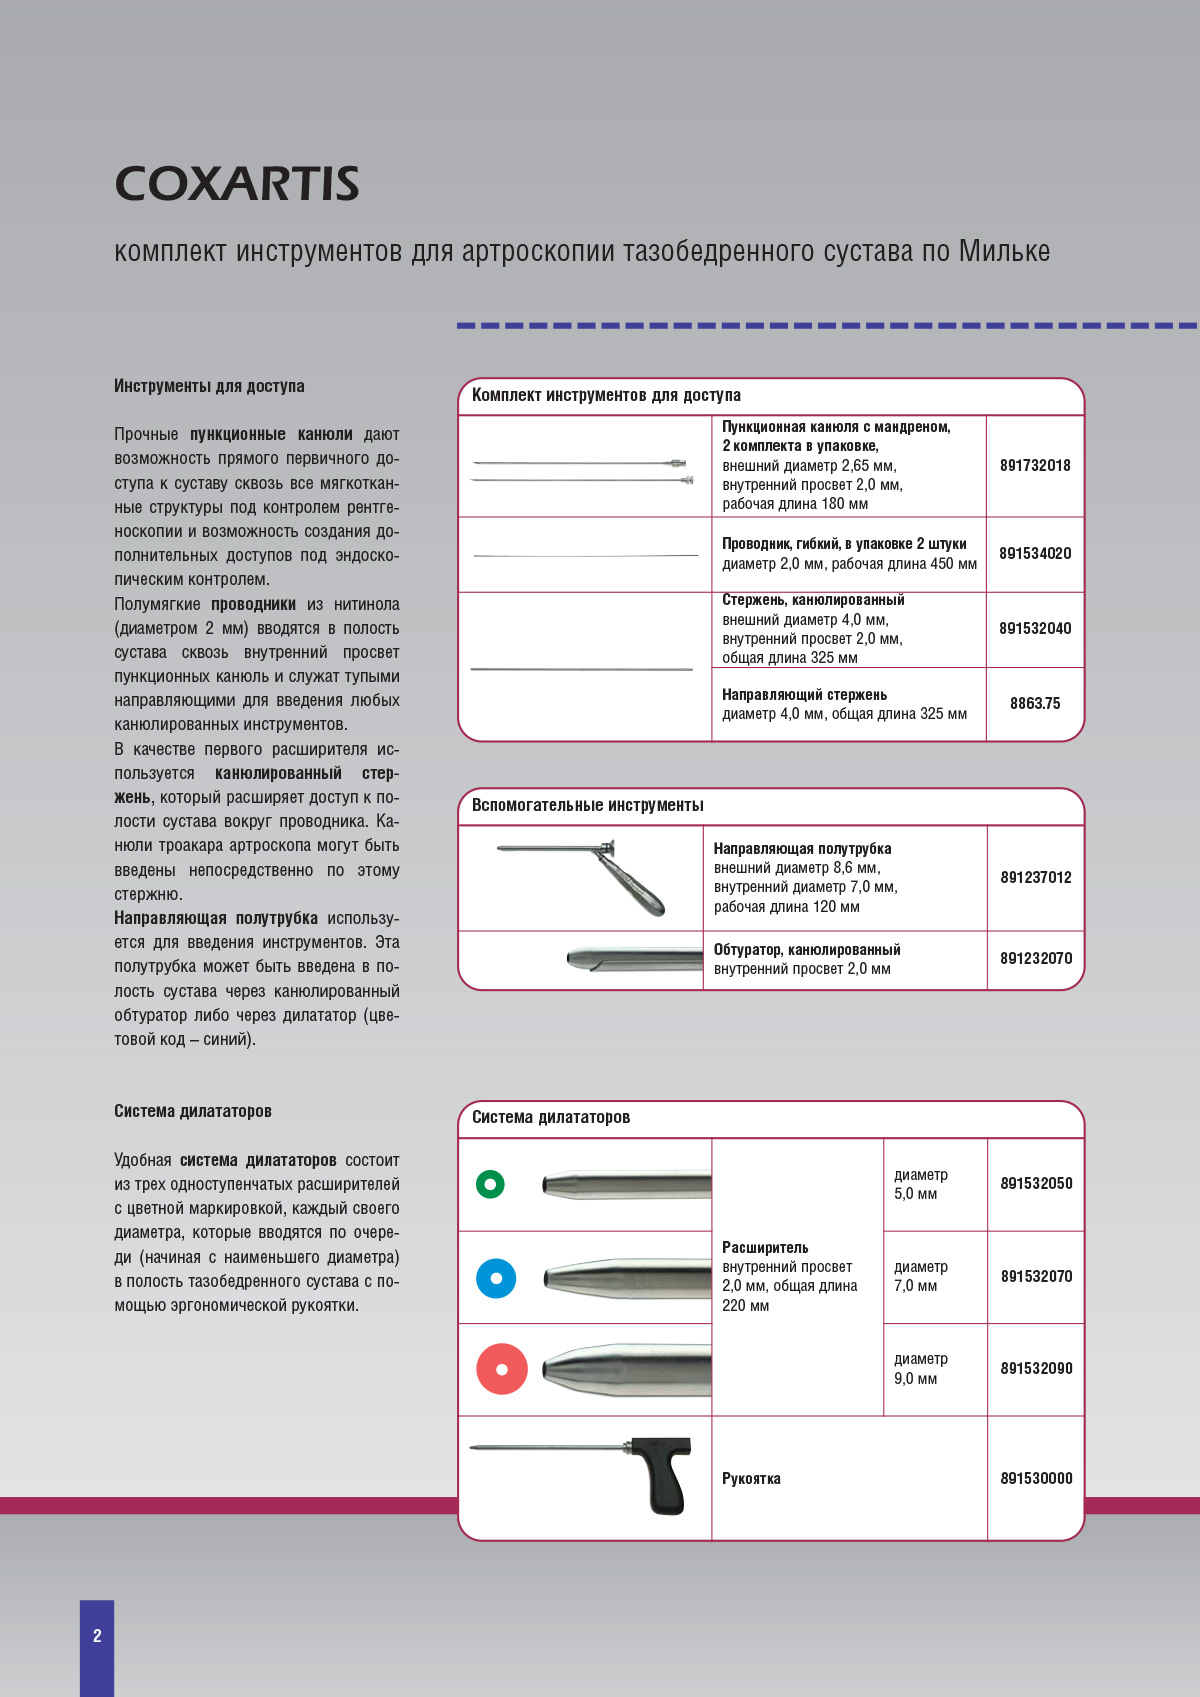 COXARTIS комплект инструментов для артроскопии тазобедренного сустава по Мильке